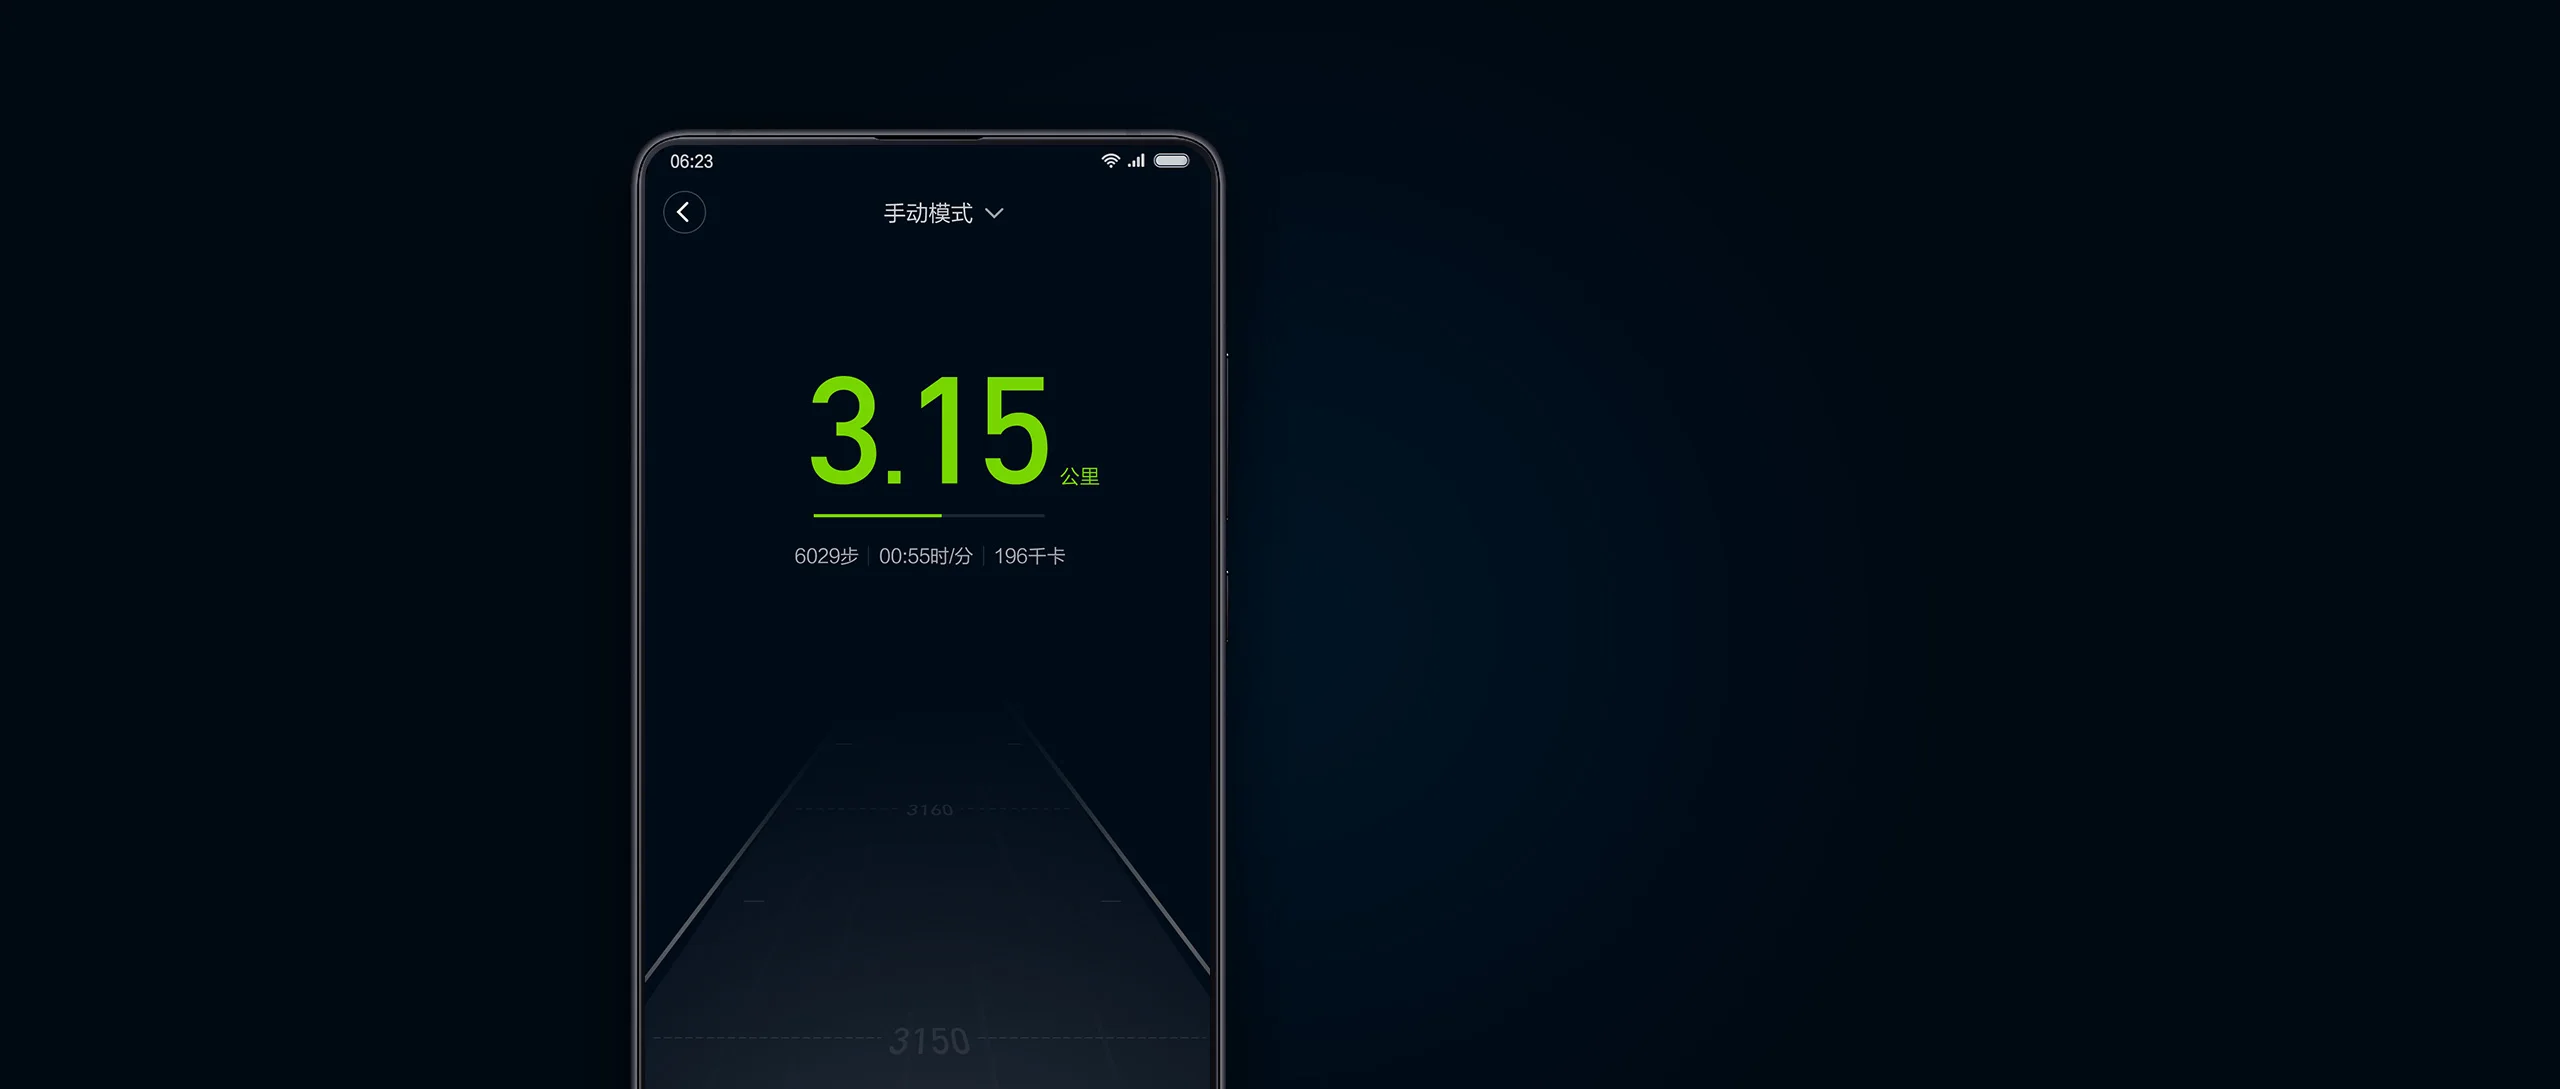 Xiao mi jia WalkingPad прогулочная машина Складная Бытовая Нескользящая протектора mi ll умный контроль скорости подключения приложение Smart mi Home